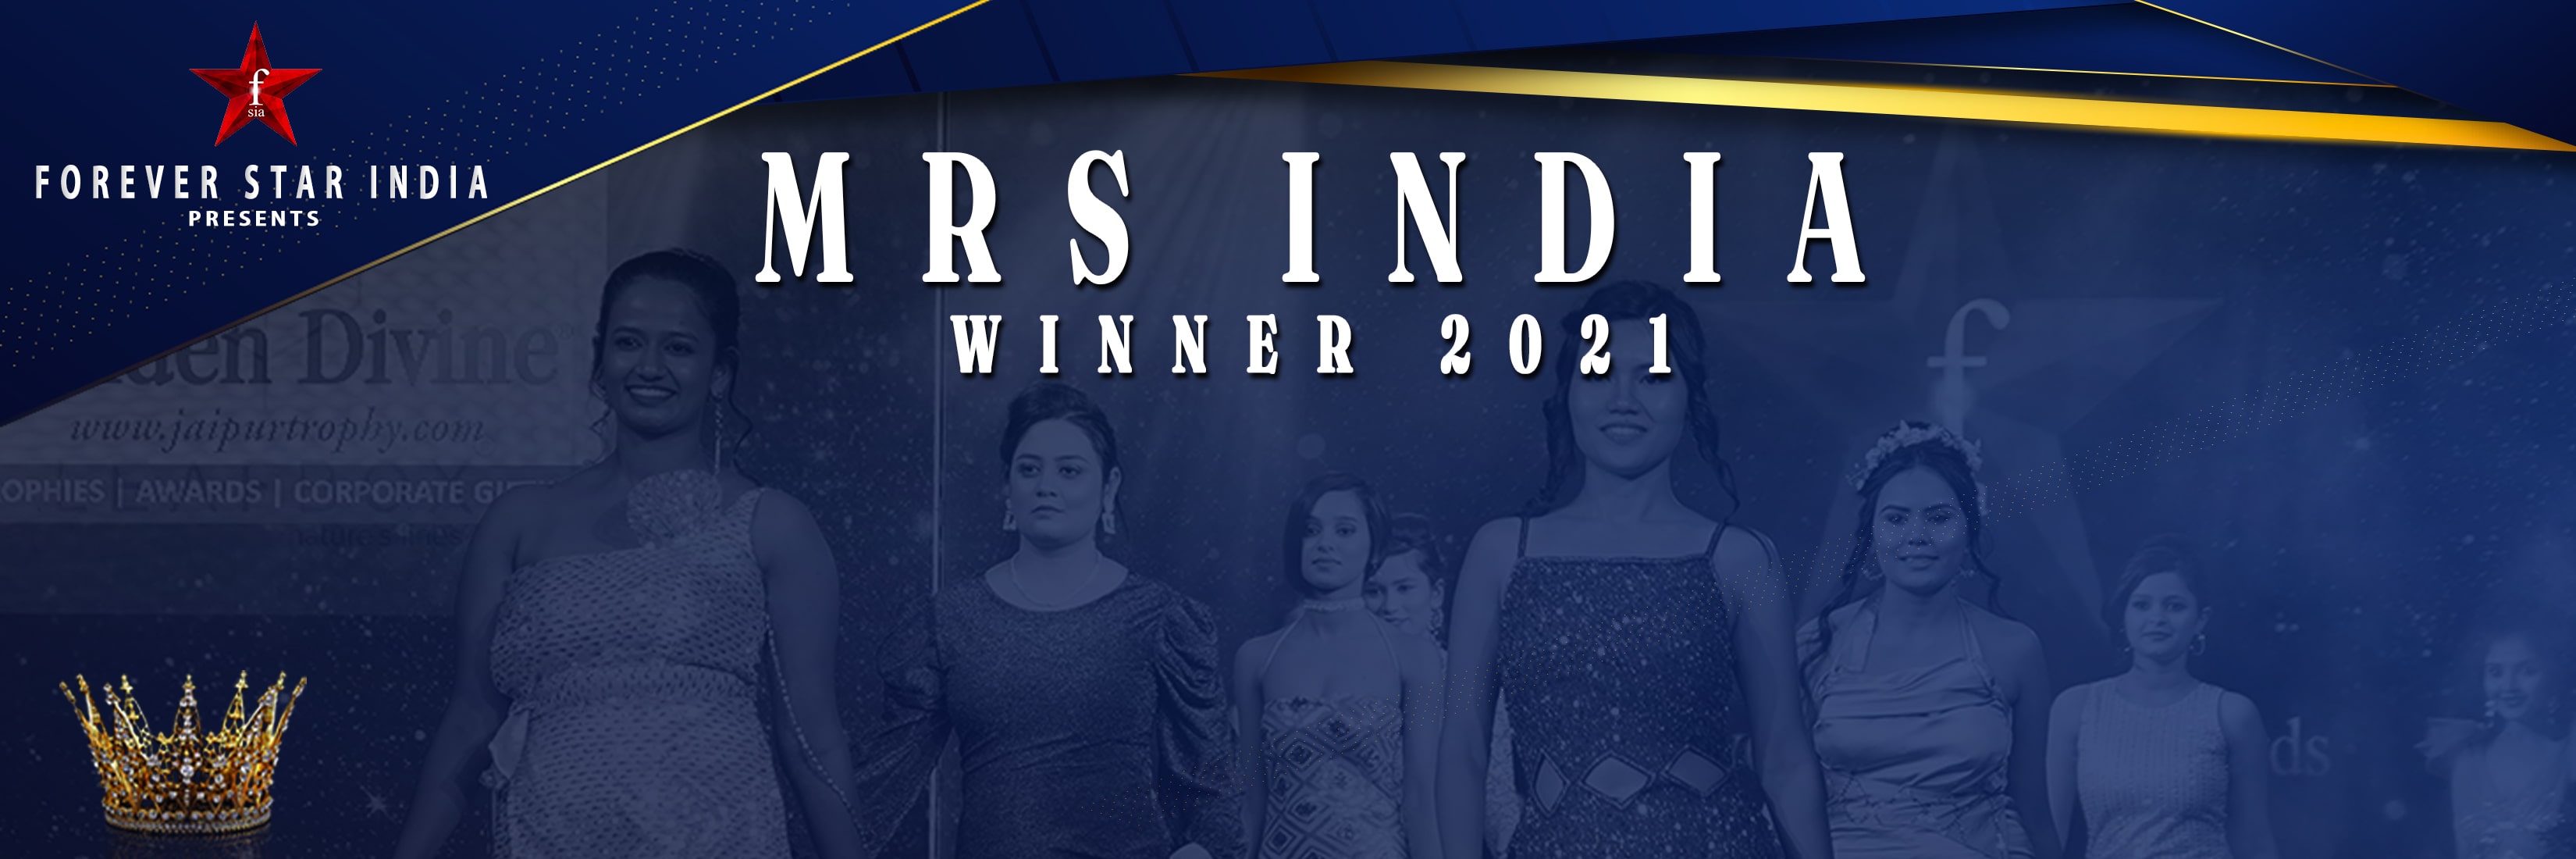 Mrs India Winner 2021.jpg